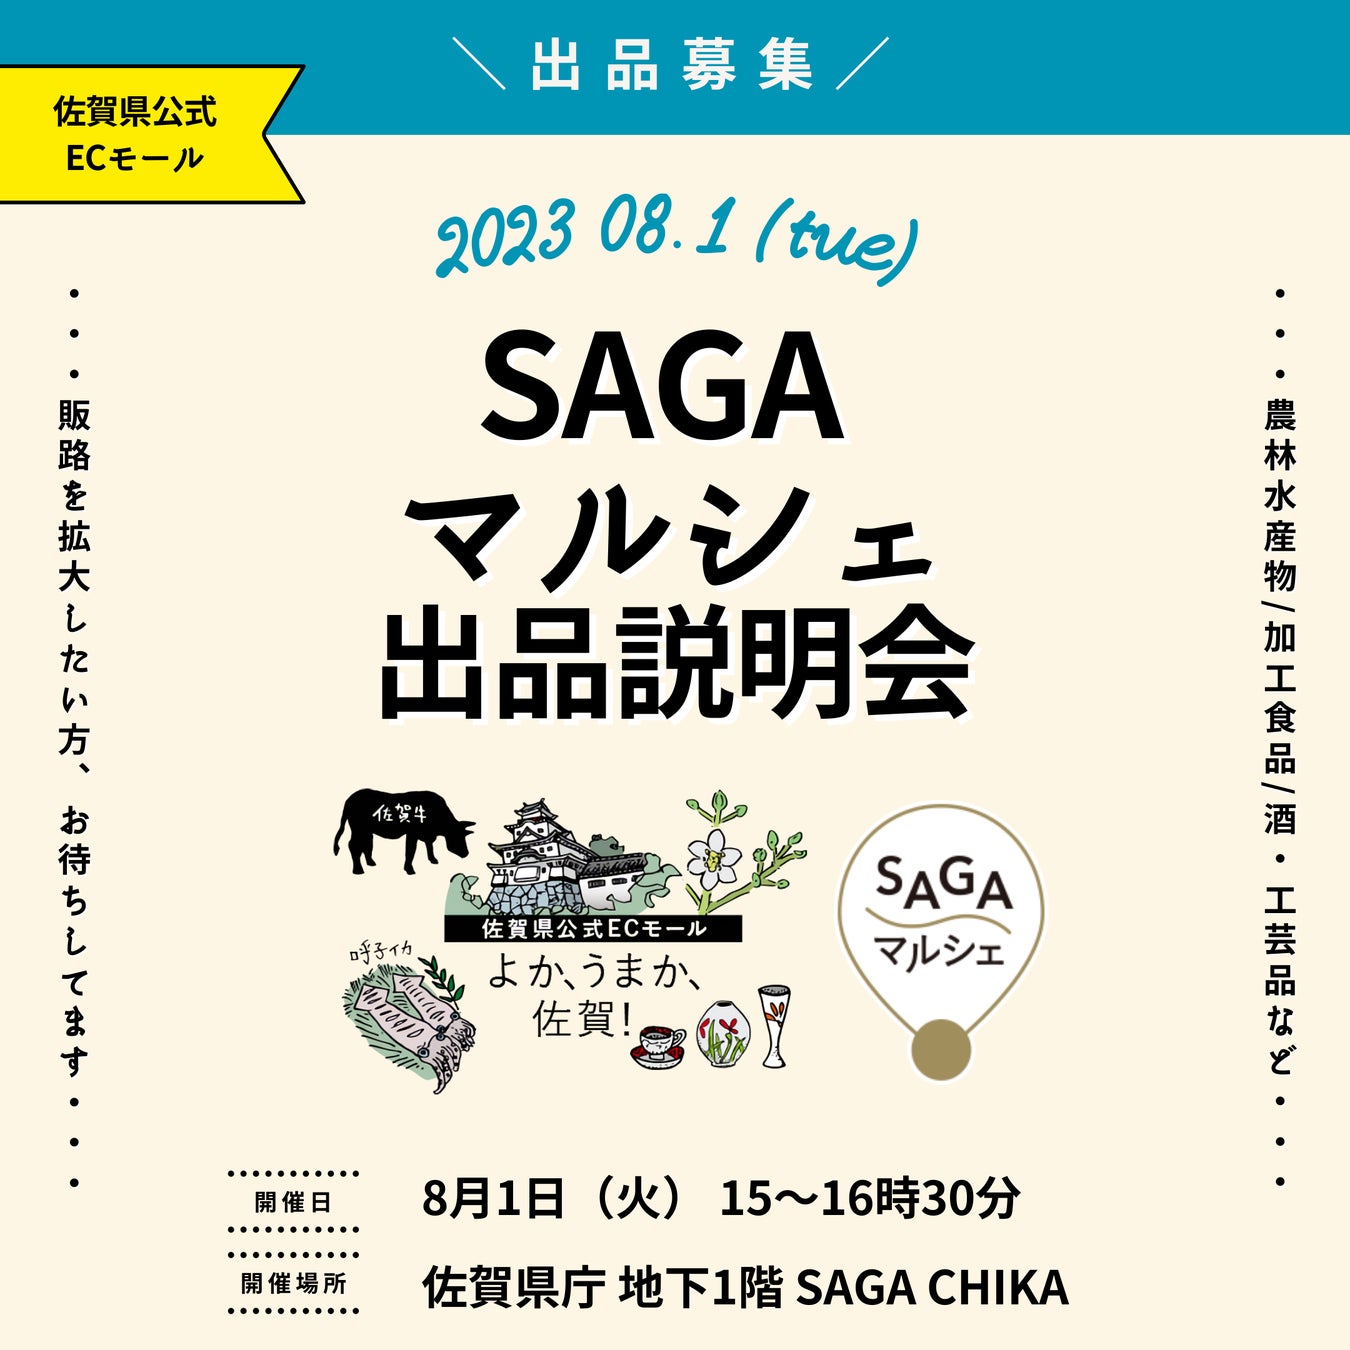 佐賀県公式ECモール「SAGAマルシェ」出品者向けの説明会を開催！